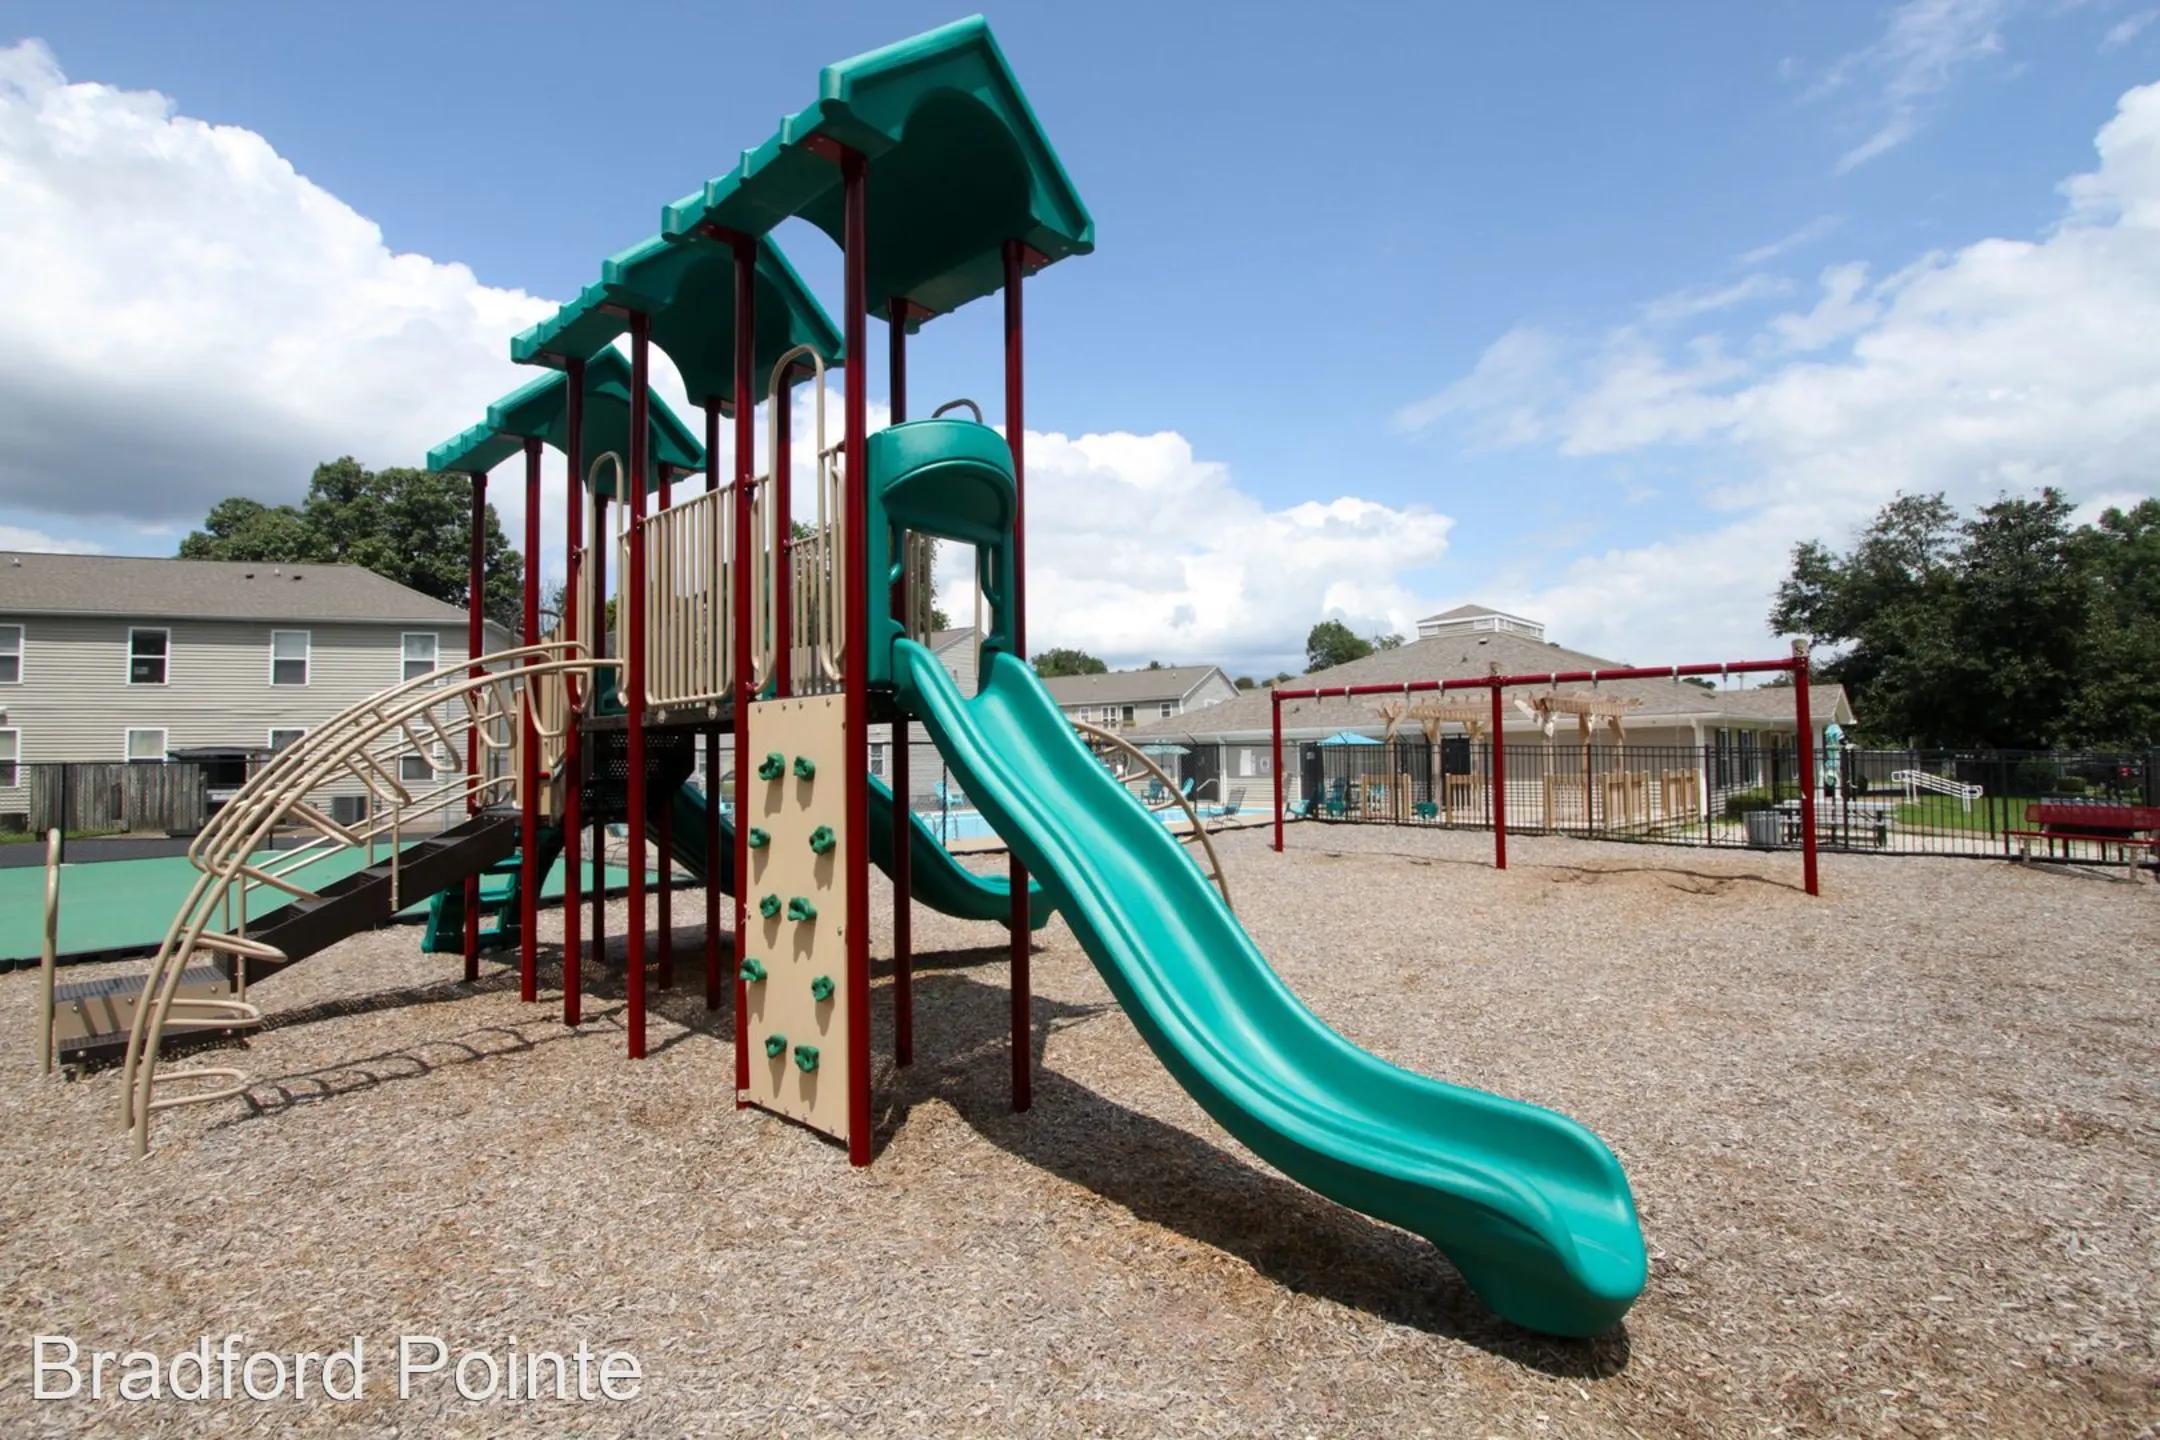 Playground - Bradford Pointe Apartments - Evansville, IN